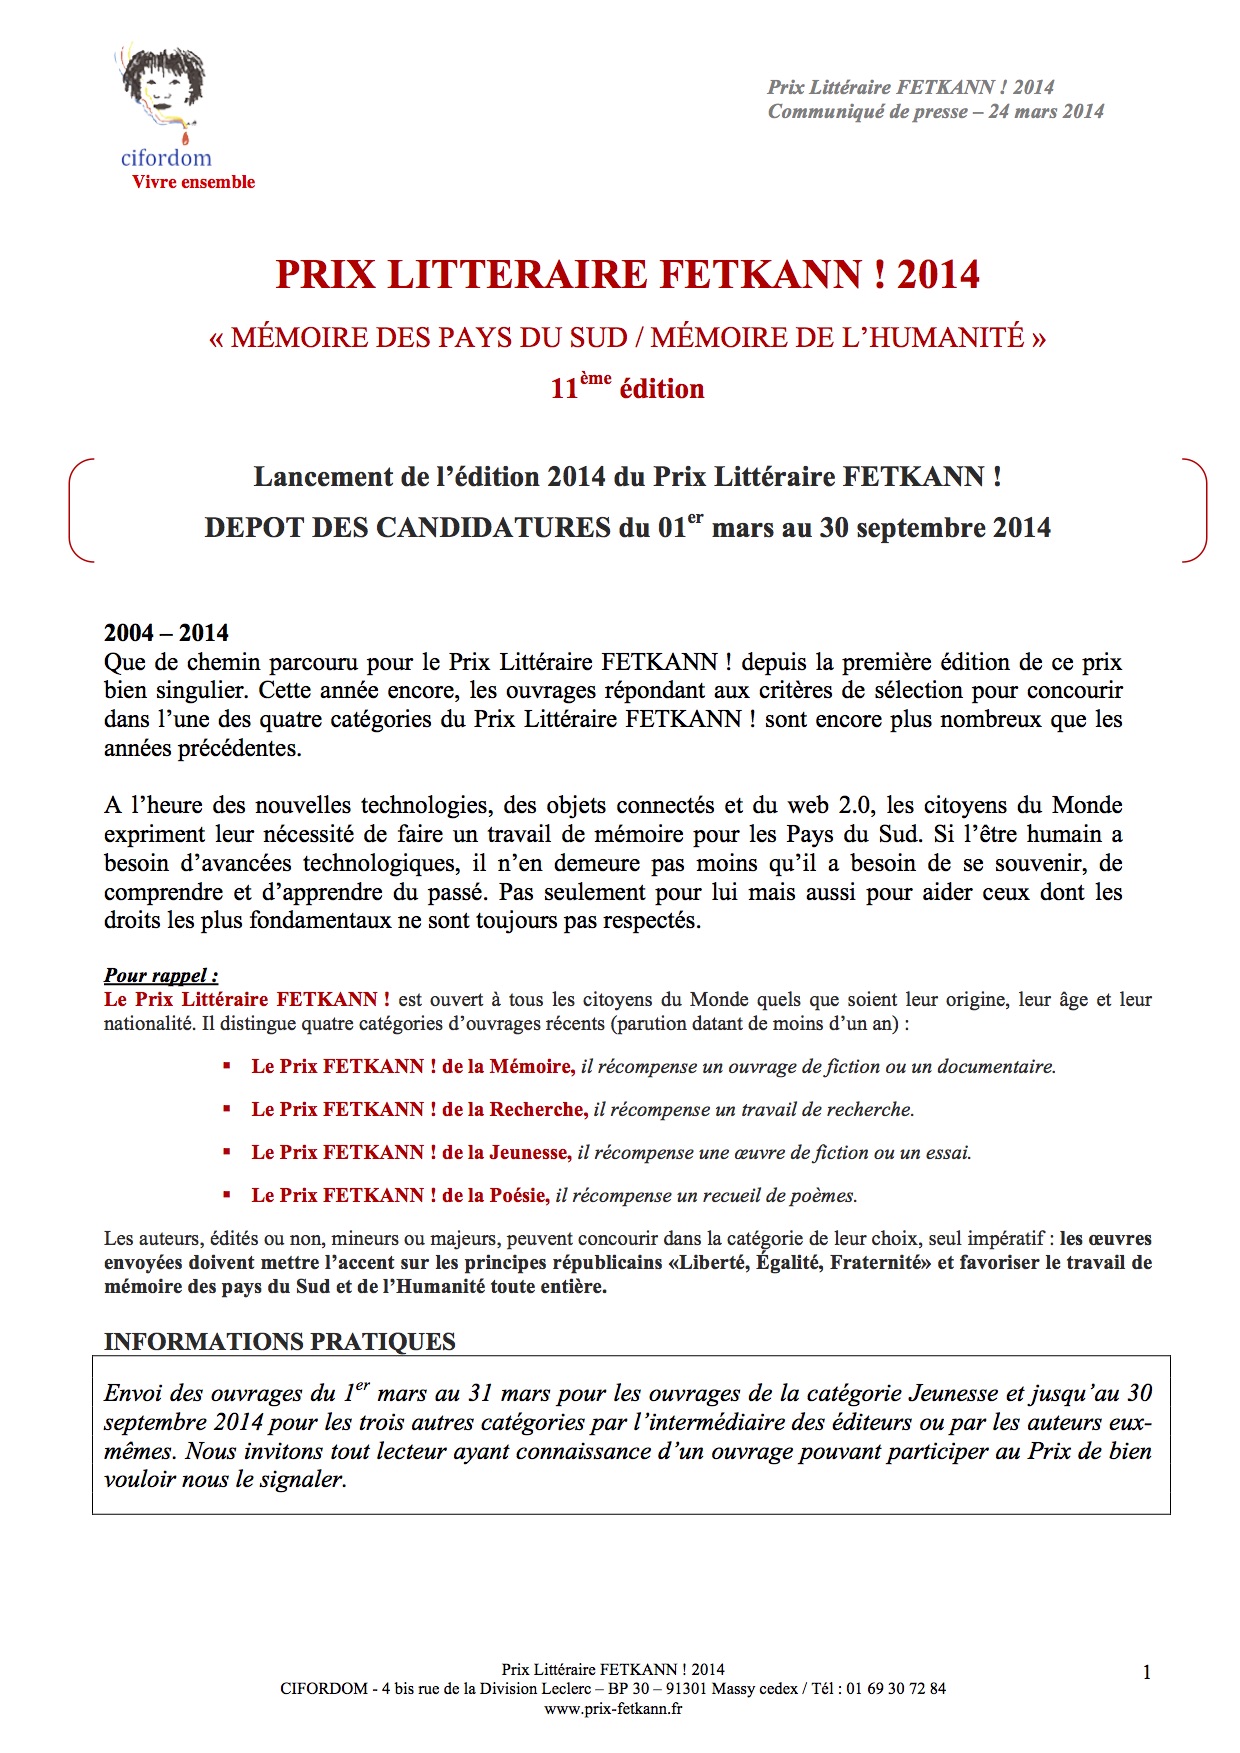 Lancement-de-l’édition-2014-du-Prix-Littéraire-FETKANN-DEPOT-DES-CANDIDATURES-du-01er-mars-au-30-septembre-2014-1